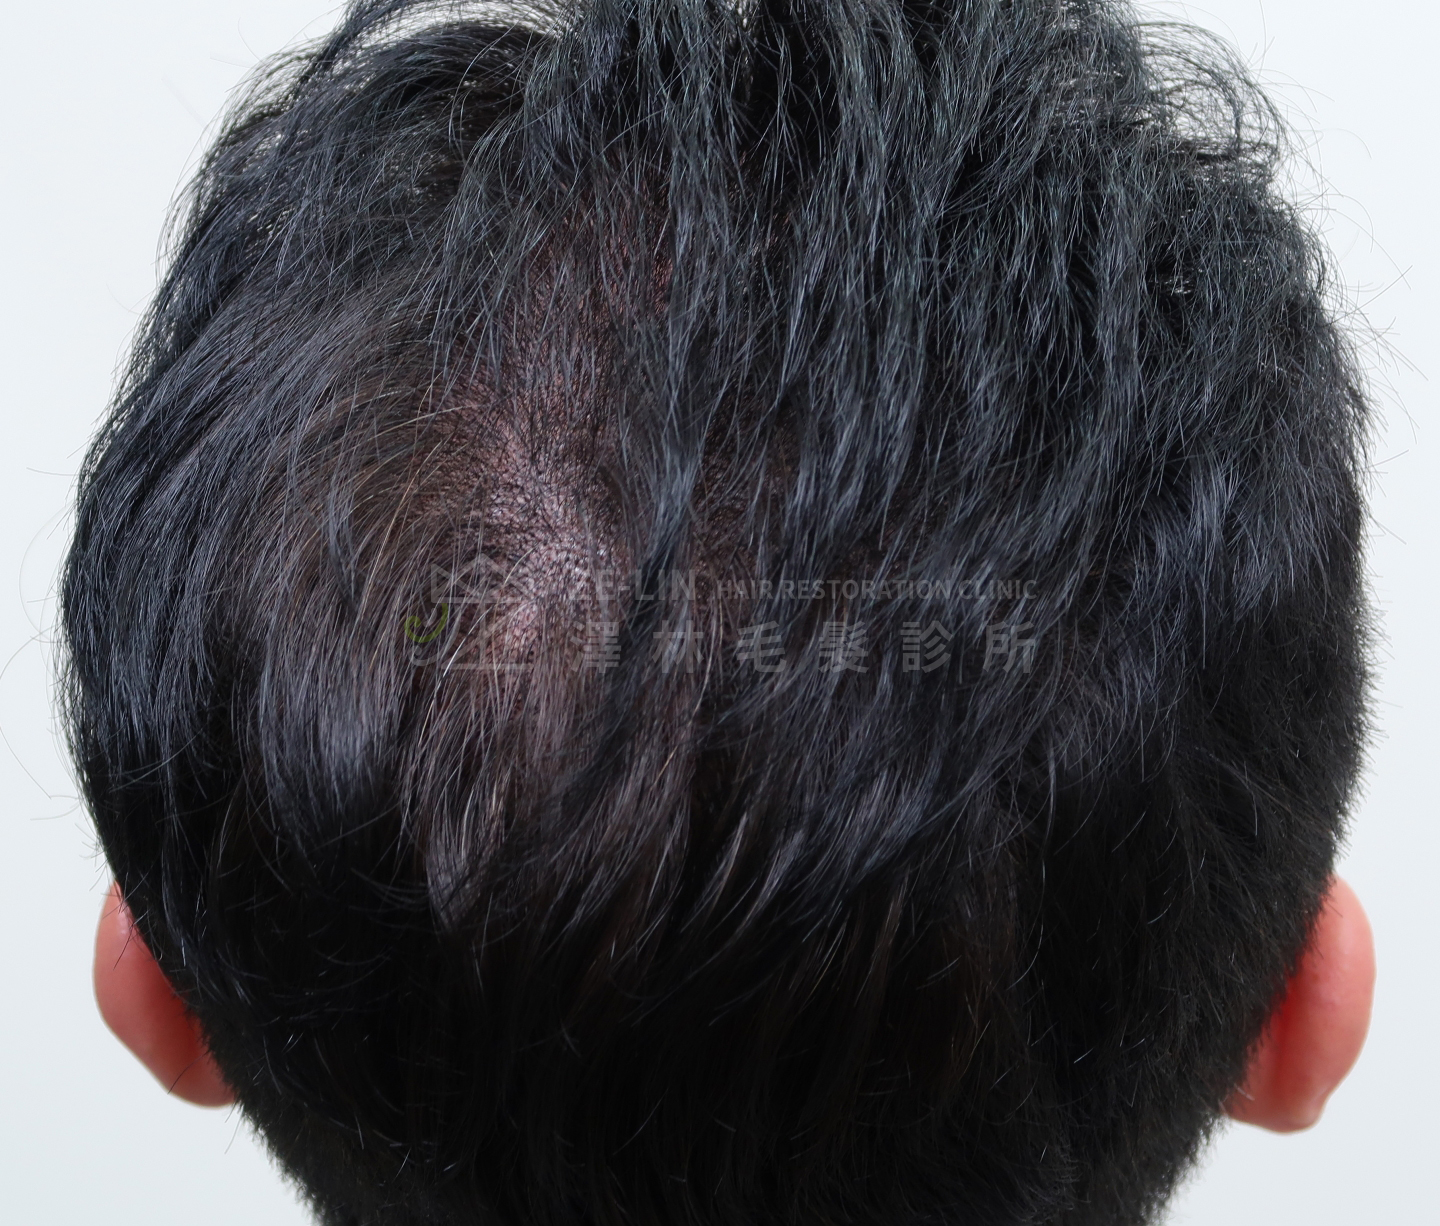 擬真髮頭皮微點染色(SMP)合併植髮手術治療案例術前